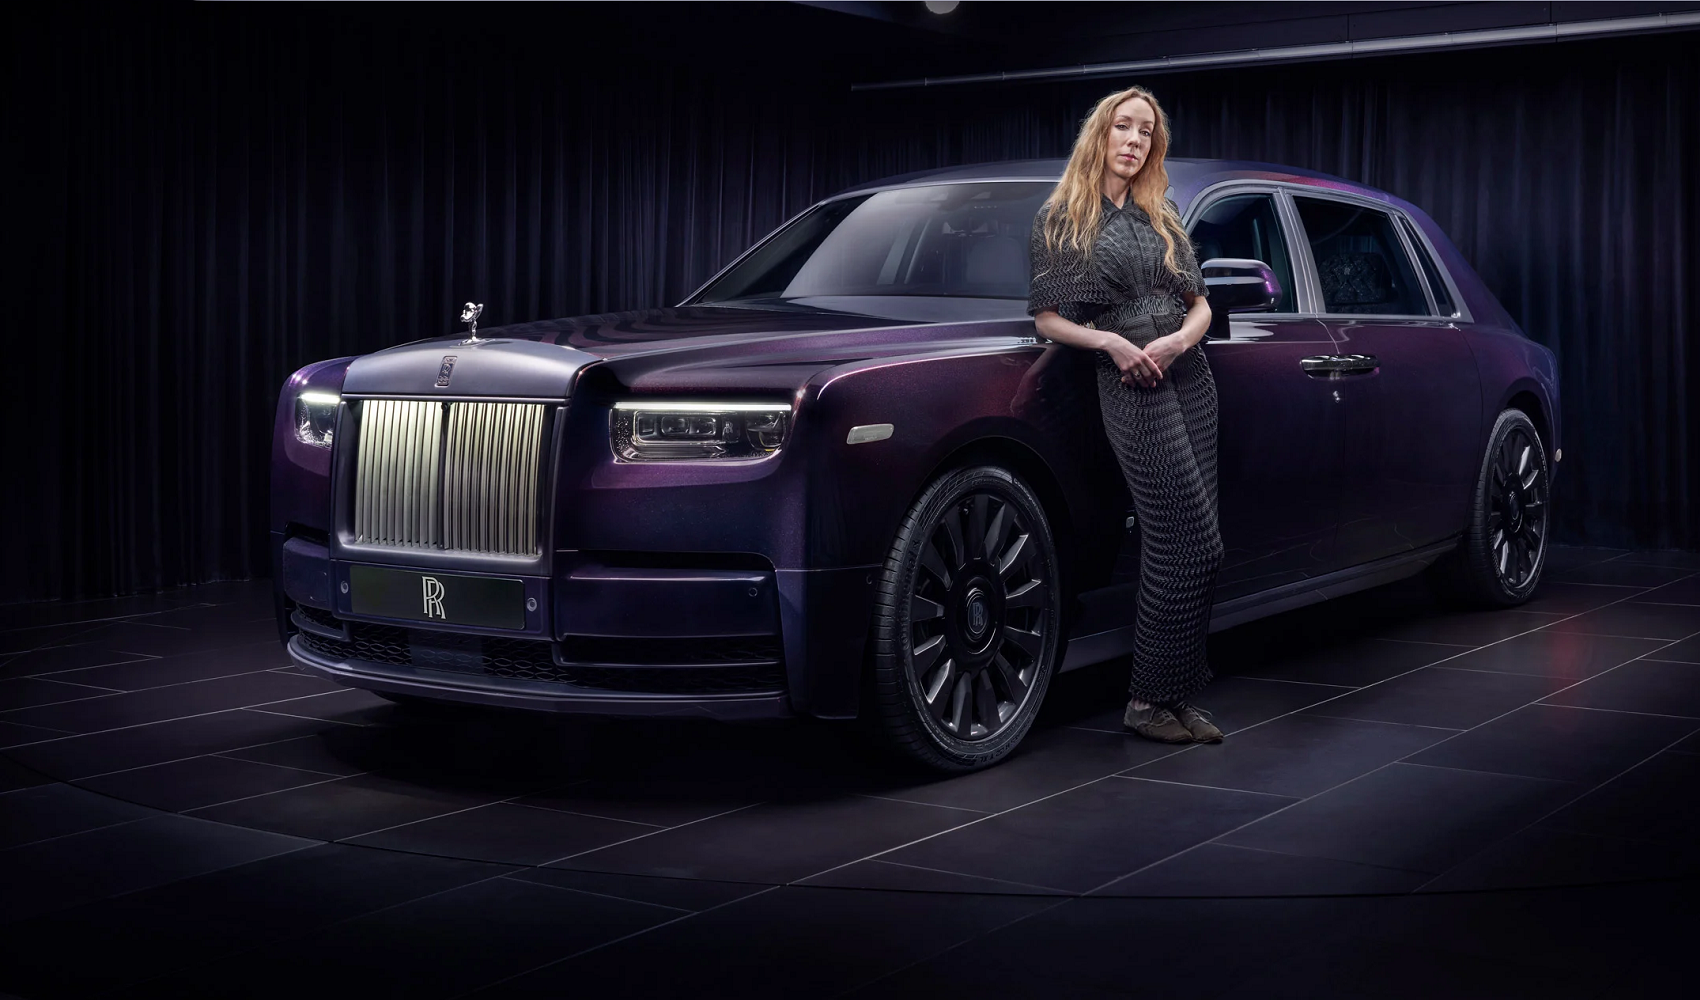 Rolls-Royce Phantom lung linh với nội thất “ánh sao”